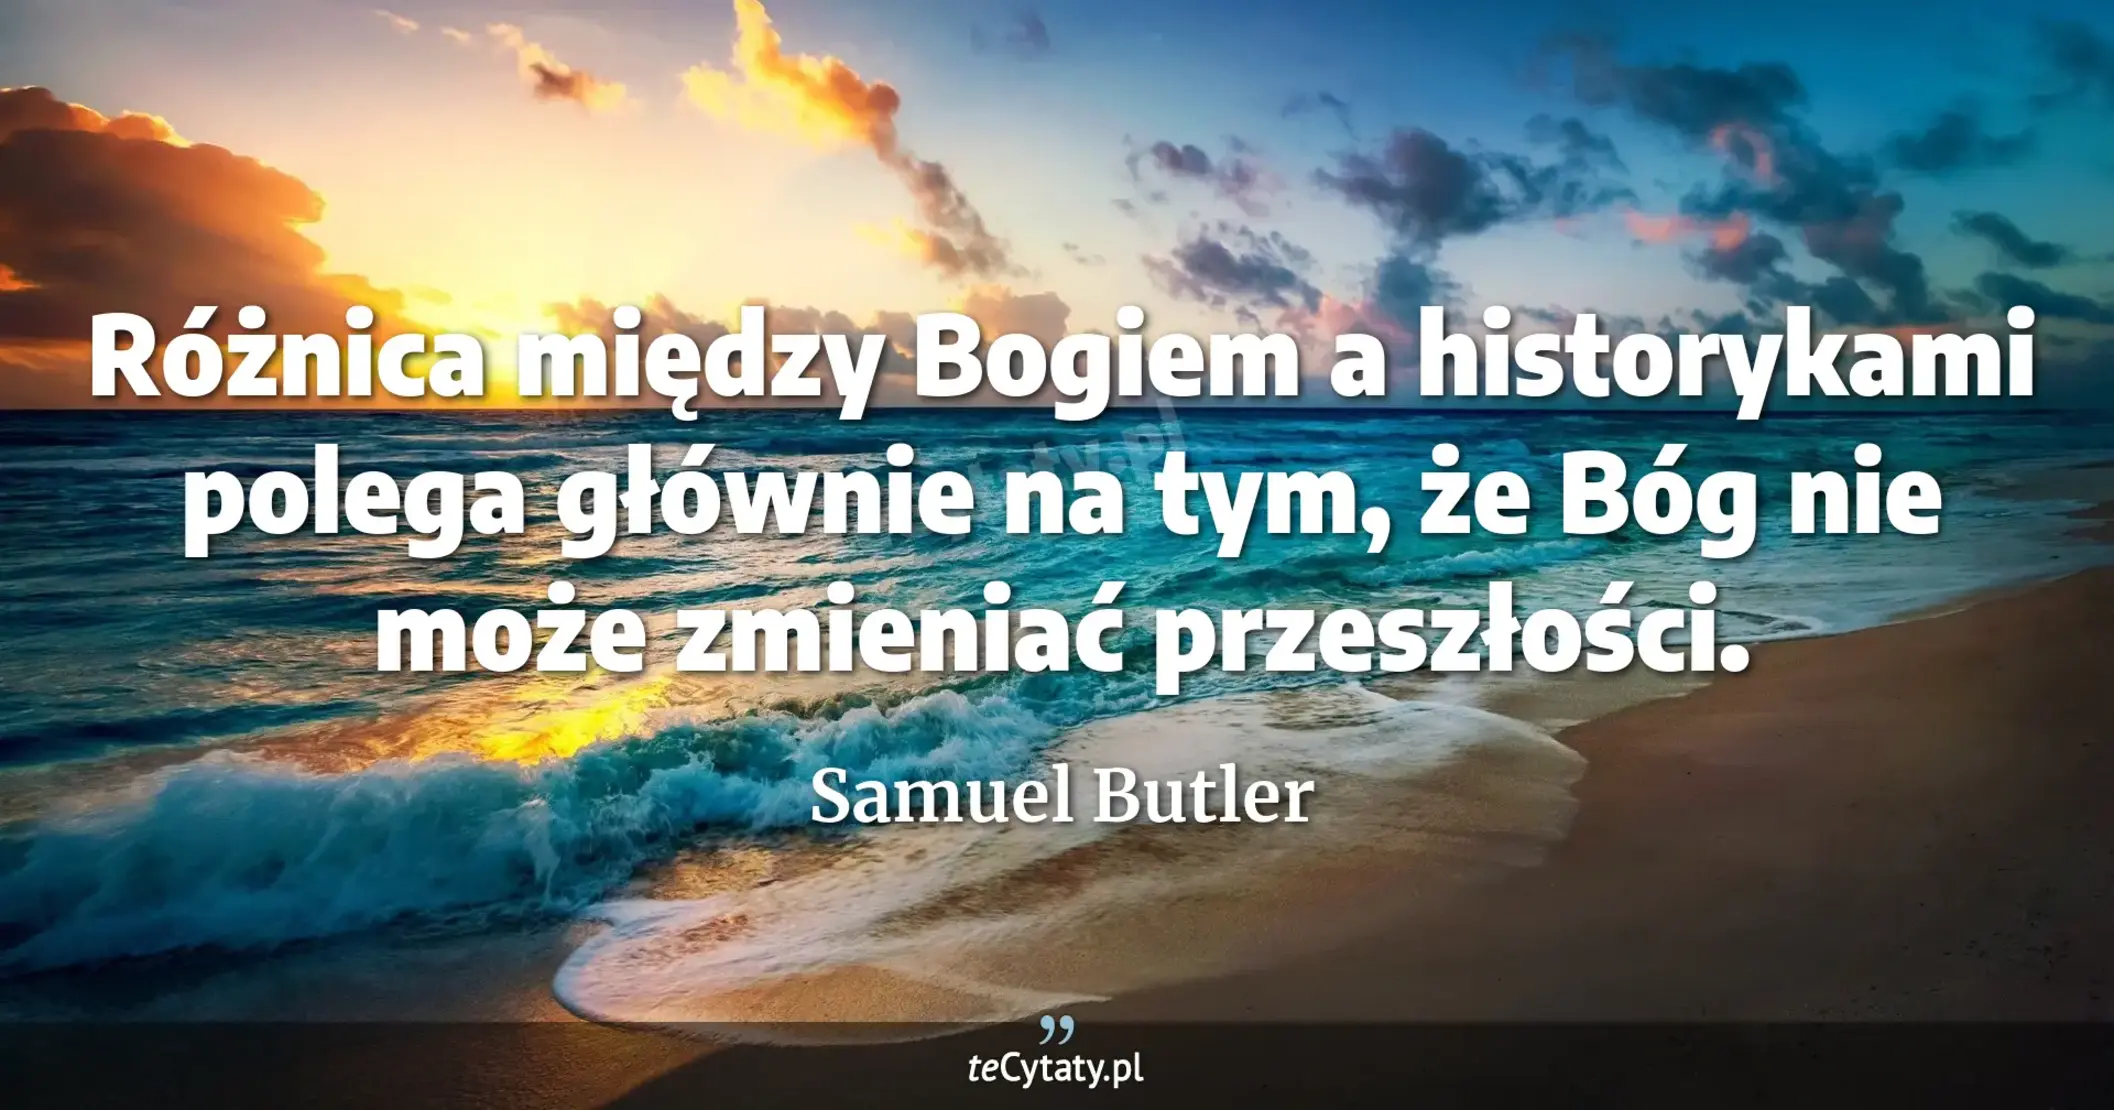 Różnica między Bogiem a historykami polega głównie na tym, że Bóg nie może zmieniać przeszłości. - Samuel Butler